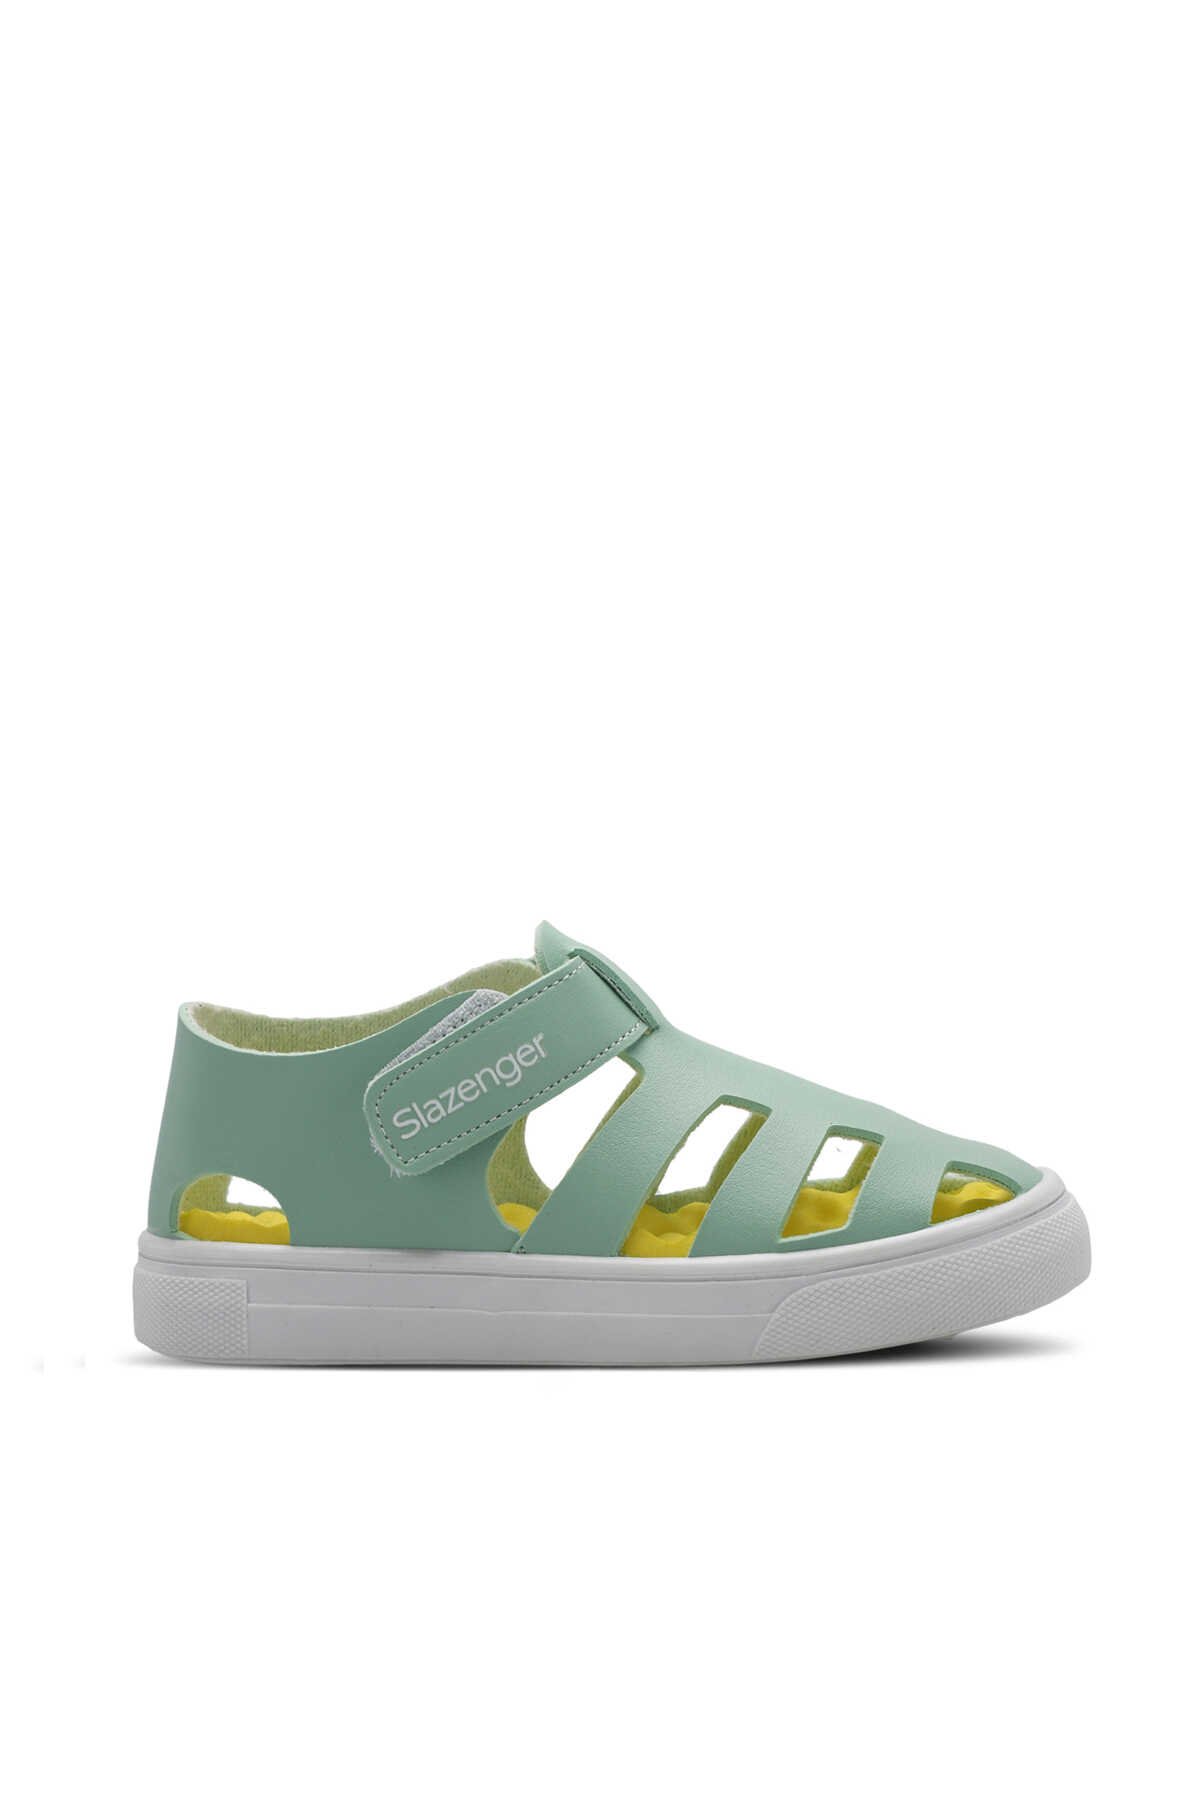 Slazenger - Slazenger KRYSTAL Unisex Çocuk Sandalet Ayakkabı Yeşil